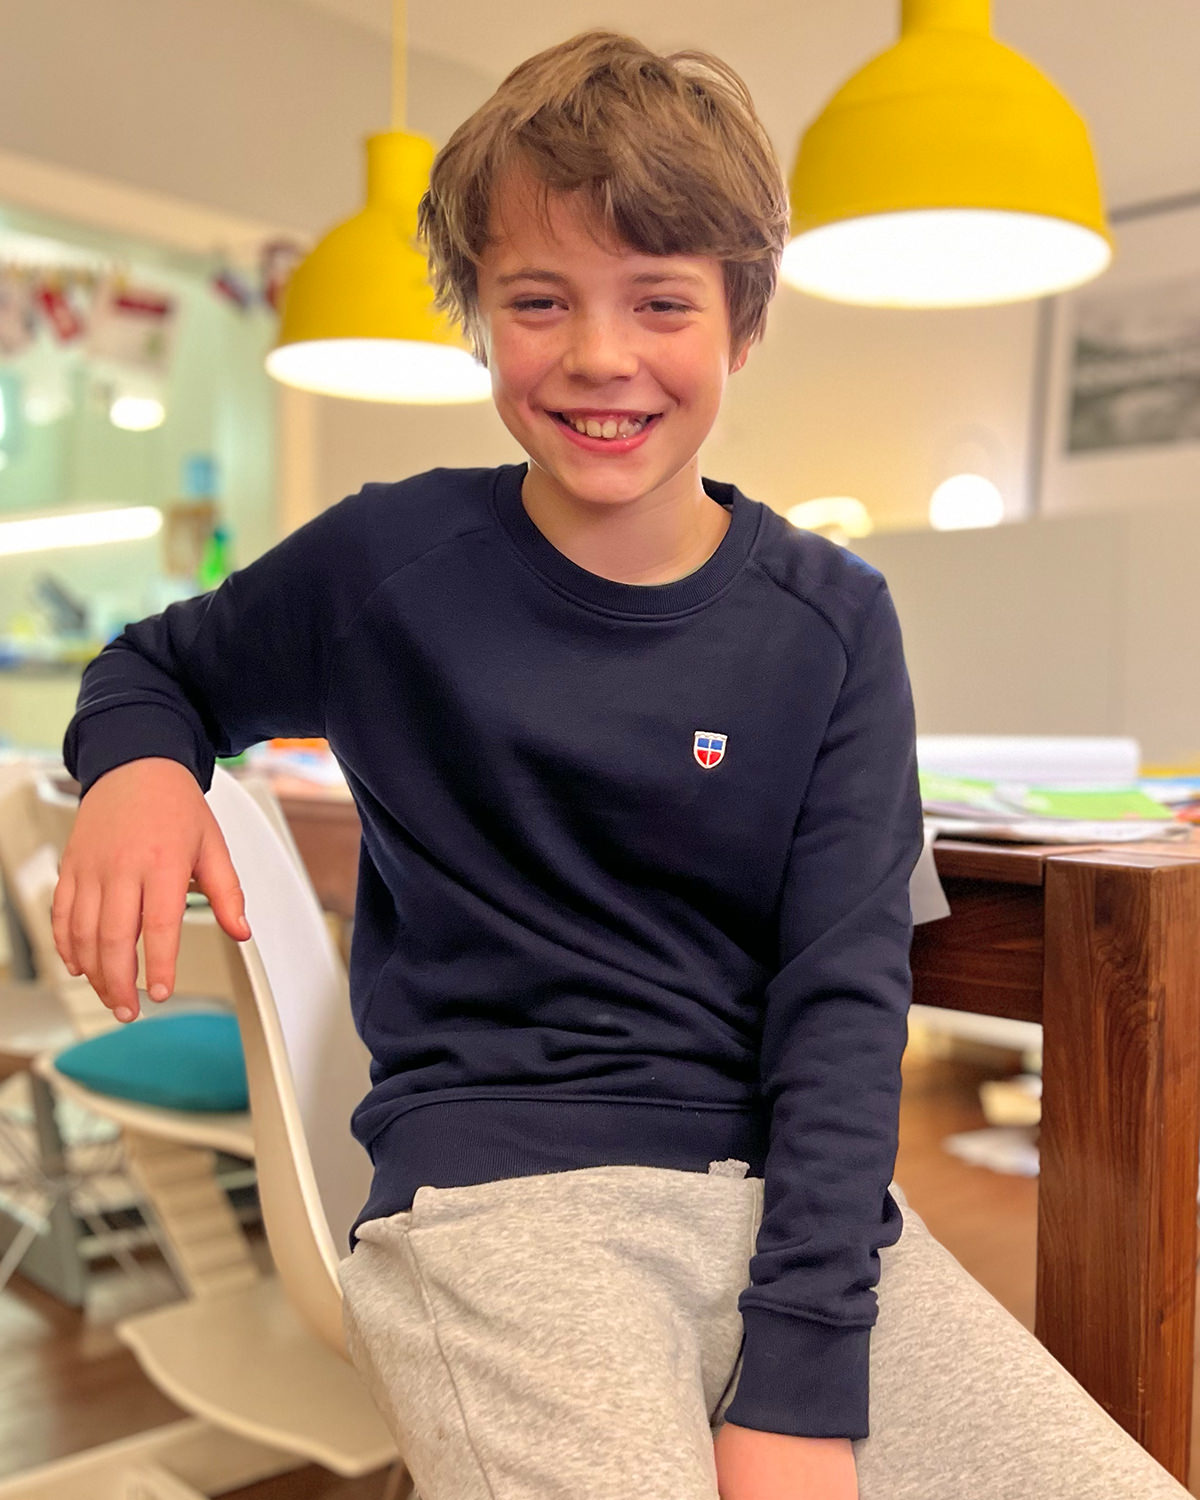 Saarland-Kinder-Sweatshirt Modell Tom von LA SARRE in Navy-Blau. Getragen von Paul. Der sitzt auf einem Stuhl, lächelt direkt in die Kamera und sieht richtig happy aus mit seinem neuen Sweatshirt.